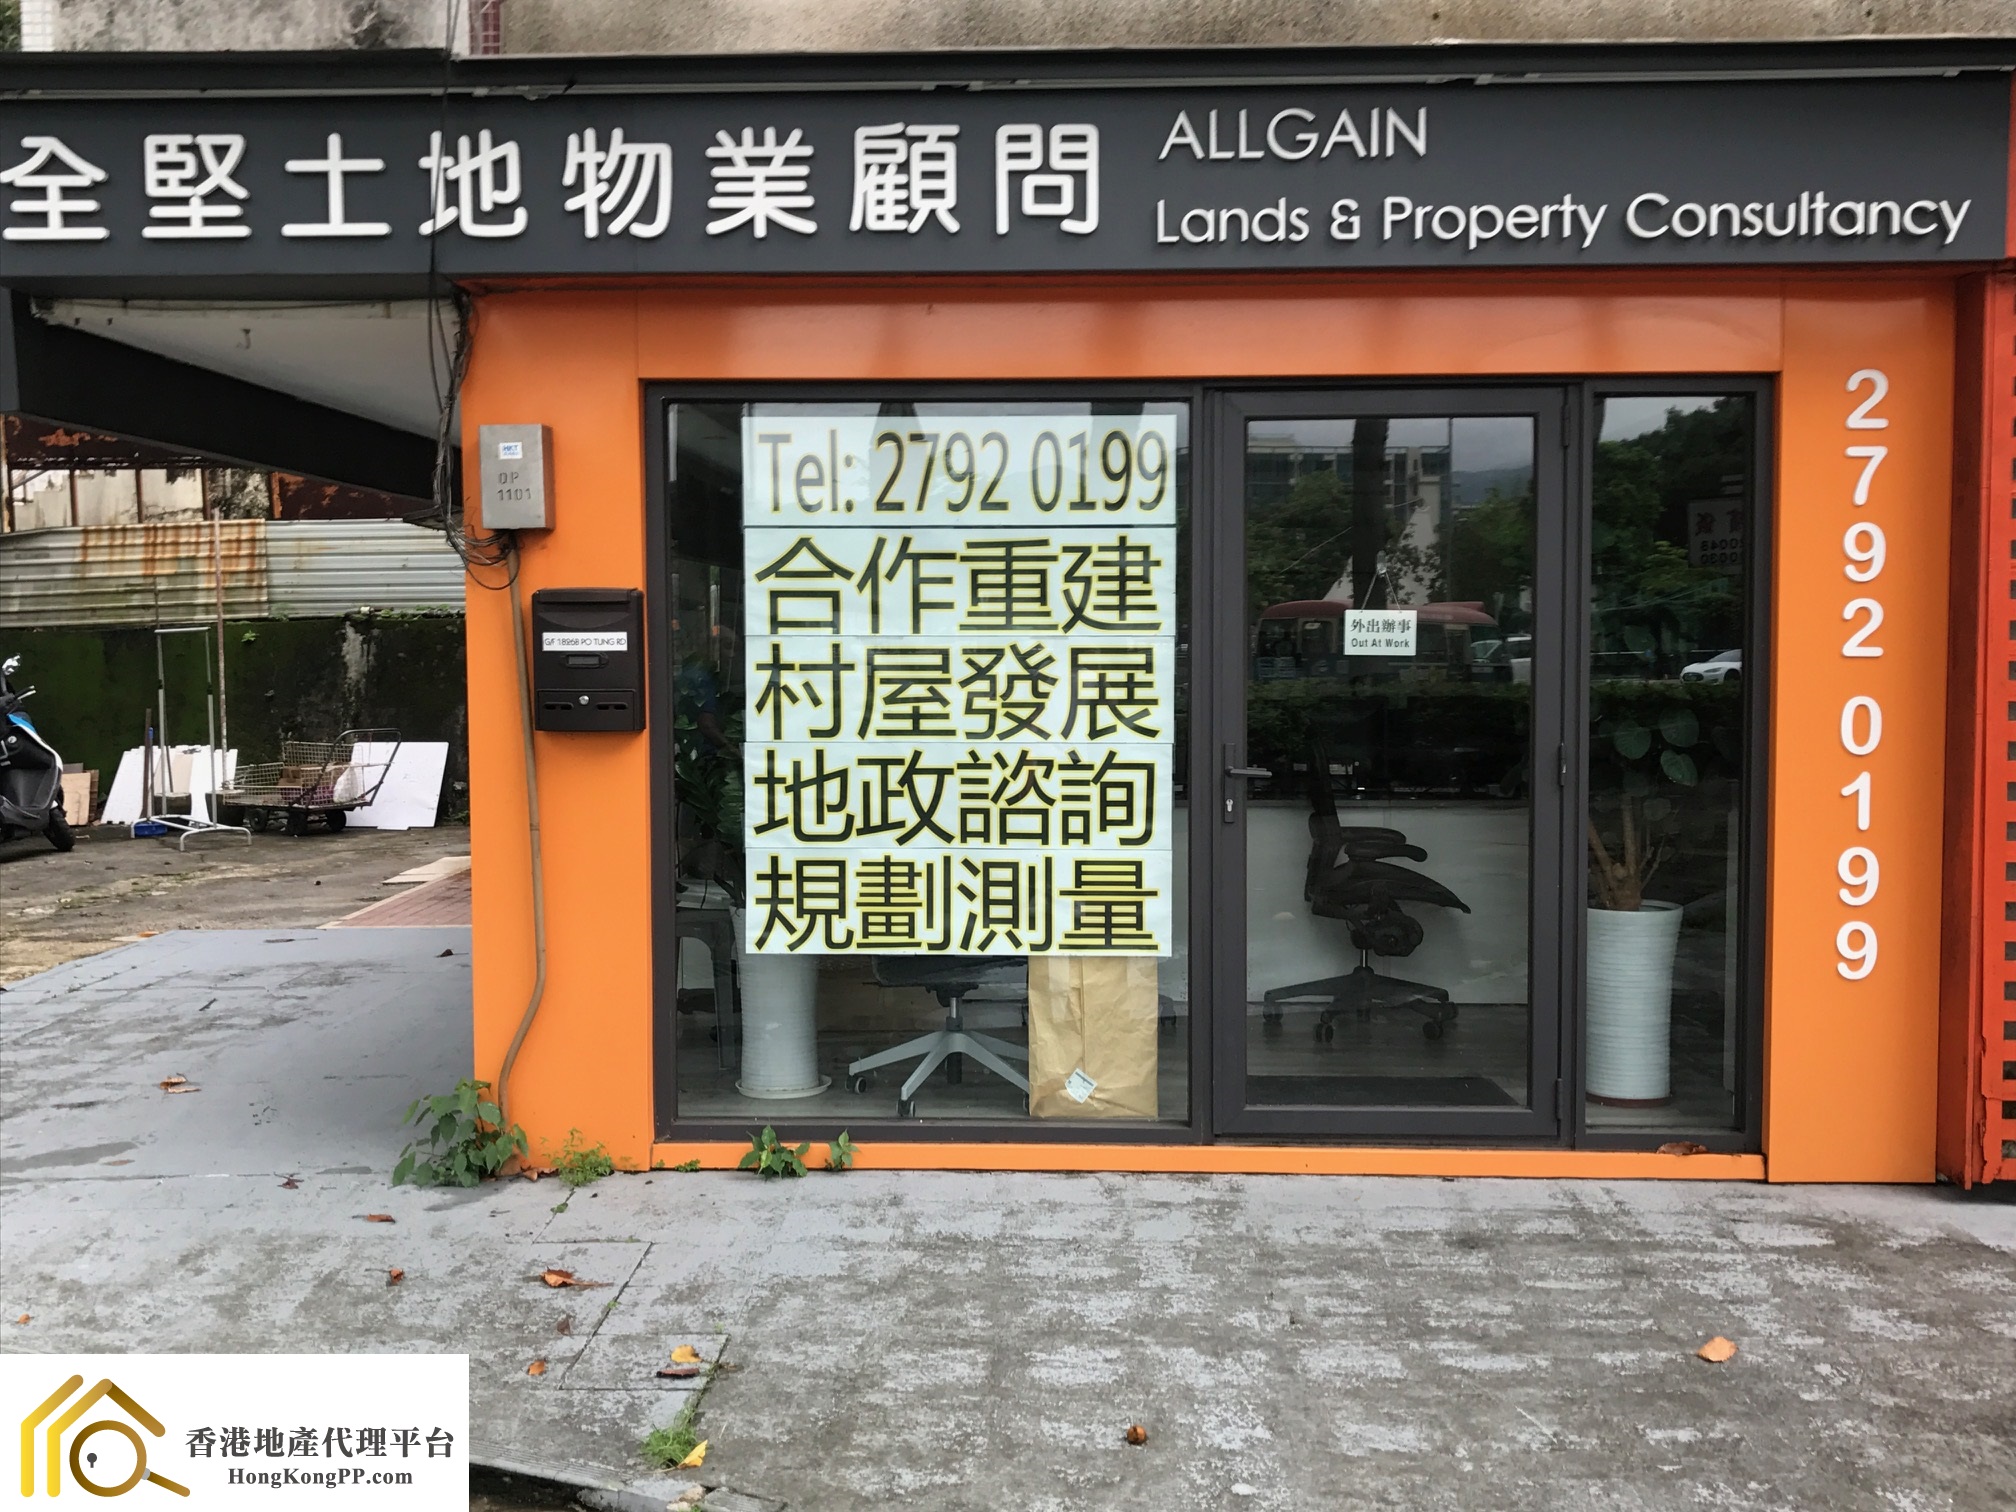 地產代理公司: 全堅土地物業顧問 Allgain Lands & Property Consultancy Ltd